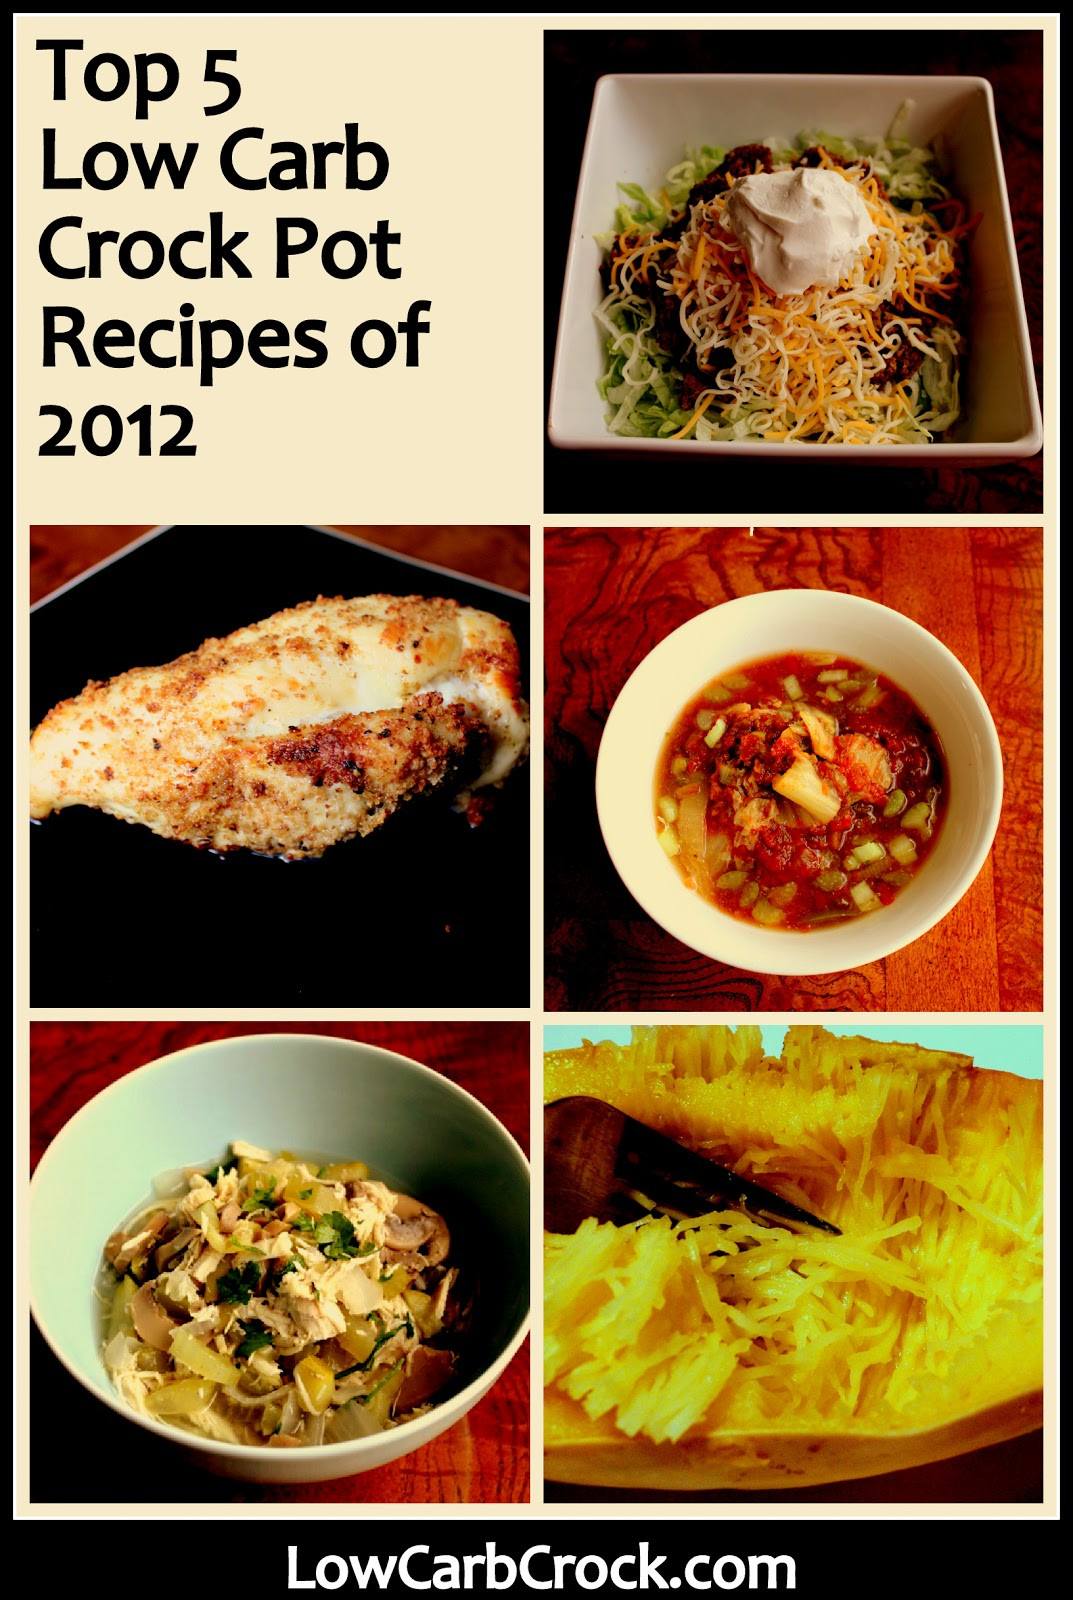 Low Carb Low Fat Crock Pot Recipes
 Top 5 Low Carb Crock Pot Recipes of 2012